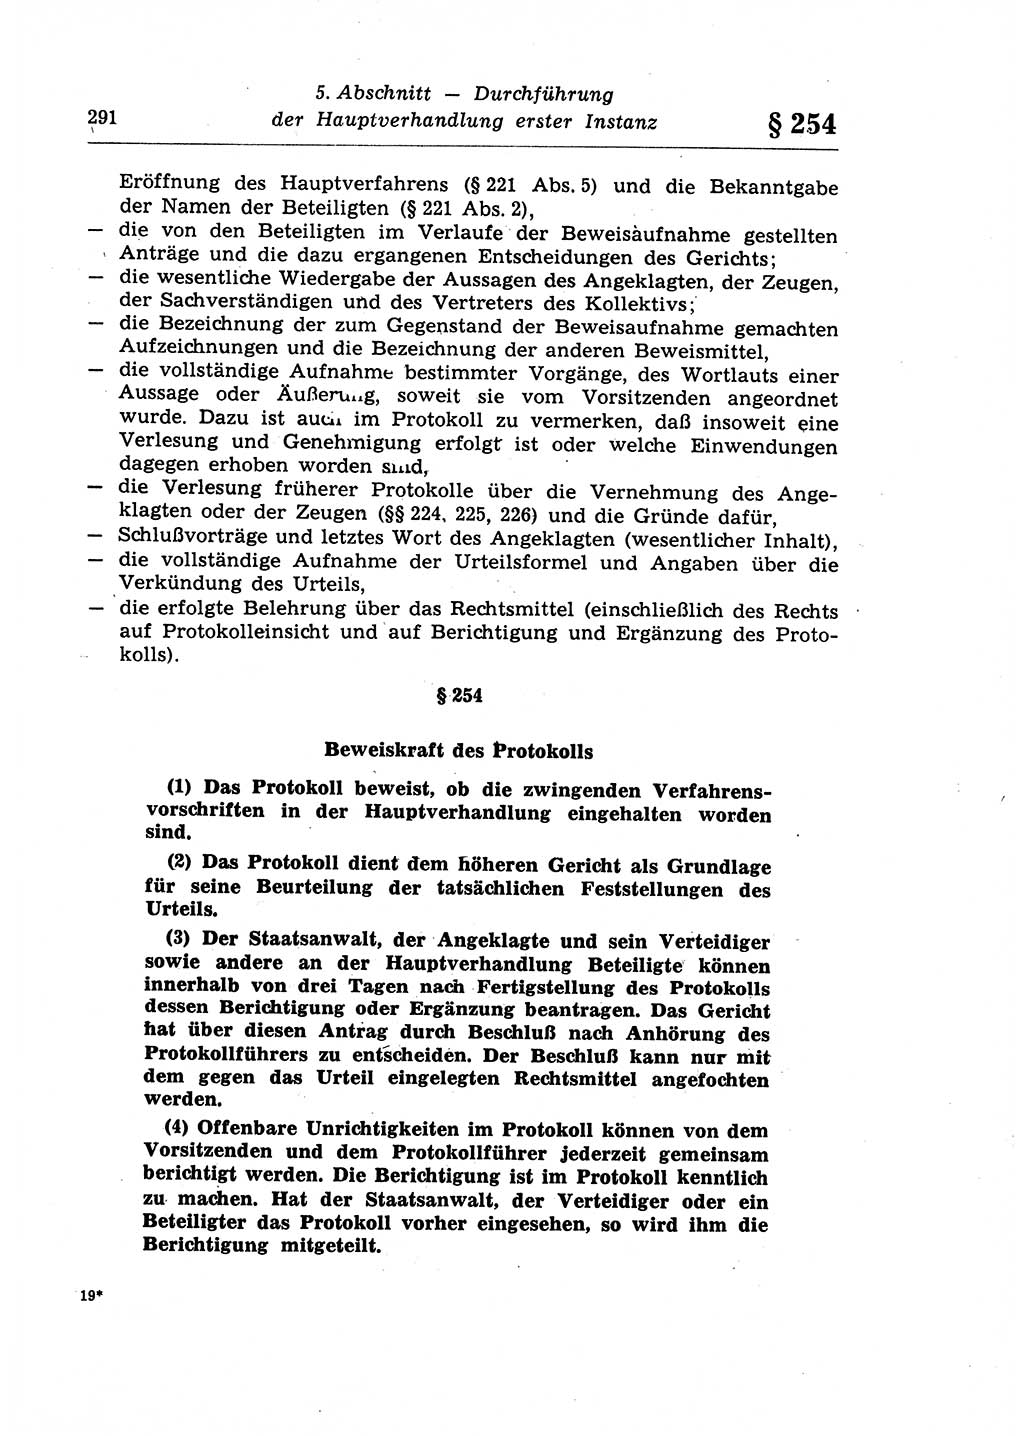 Strafprozeßrecht der DDR (Deutsche Demokratische Republik), Lehrkommentar zur Strafprozeßordnung (StPO) 1968, Seite 291 (Strafprozeßr. DDR Lehrkomm. StPO 19688, S. 291)